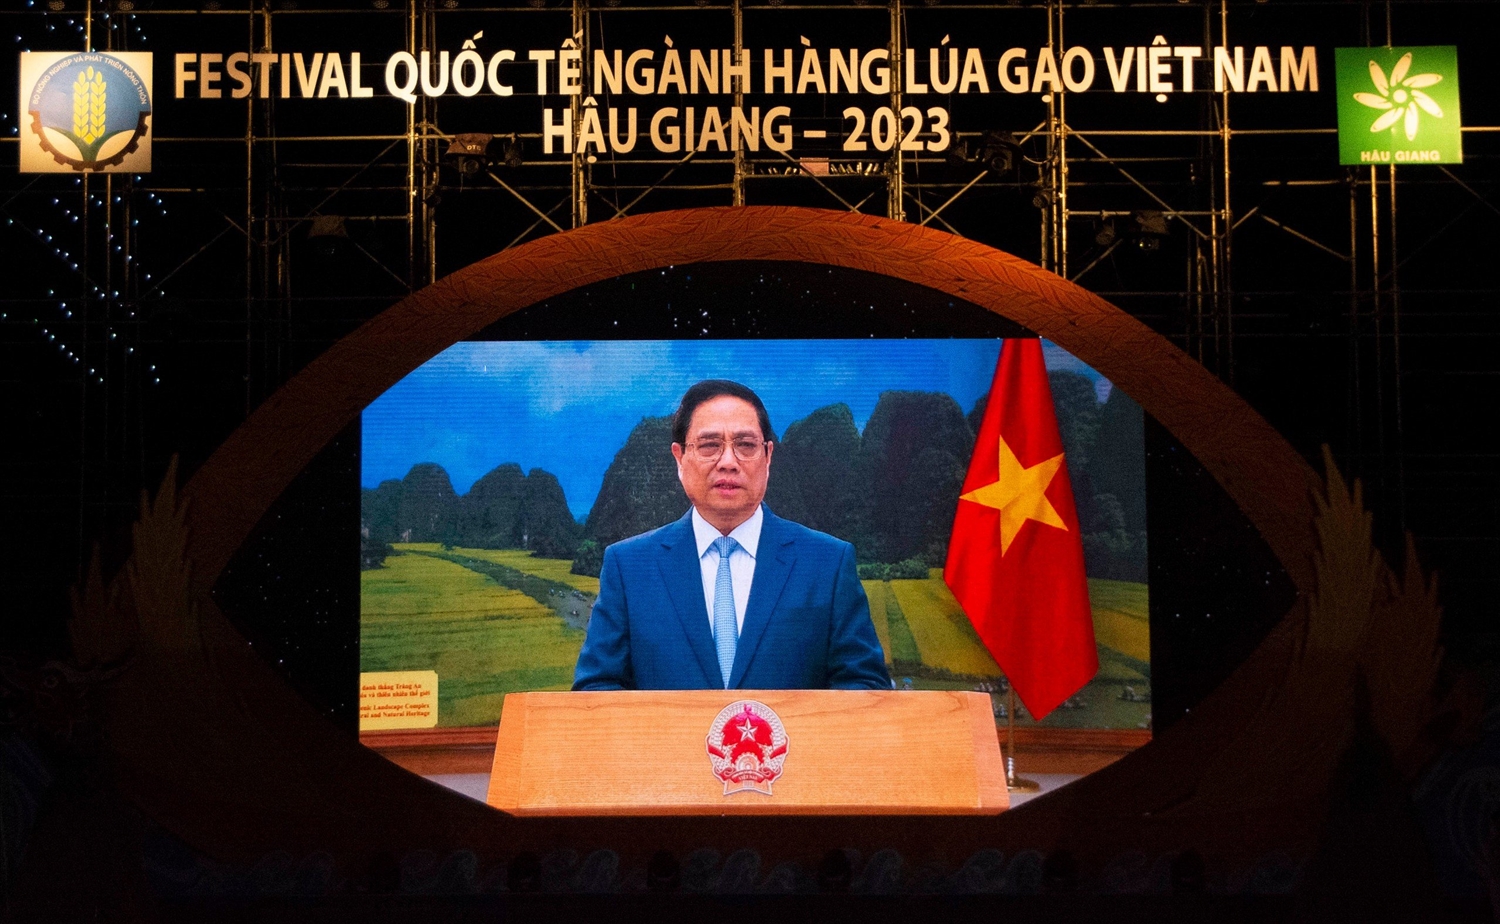 Thủ tướng Chính phủ Phạm Minh Chính phát biểu chỉ đạo trực tuyến từ điểm cầu Hà Nội, với Festival quốc tế ngành hàng lúa gạo Việt Nam - Hậu Giang 2023